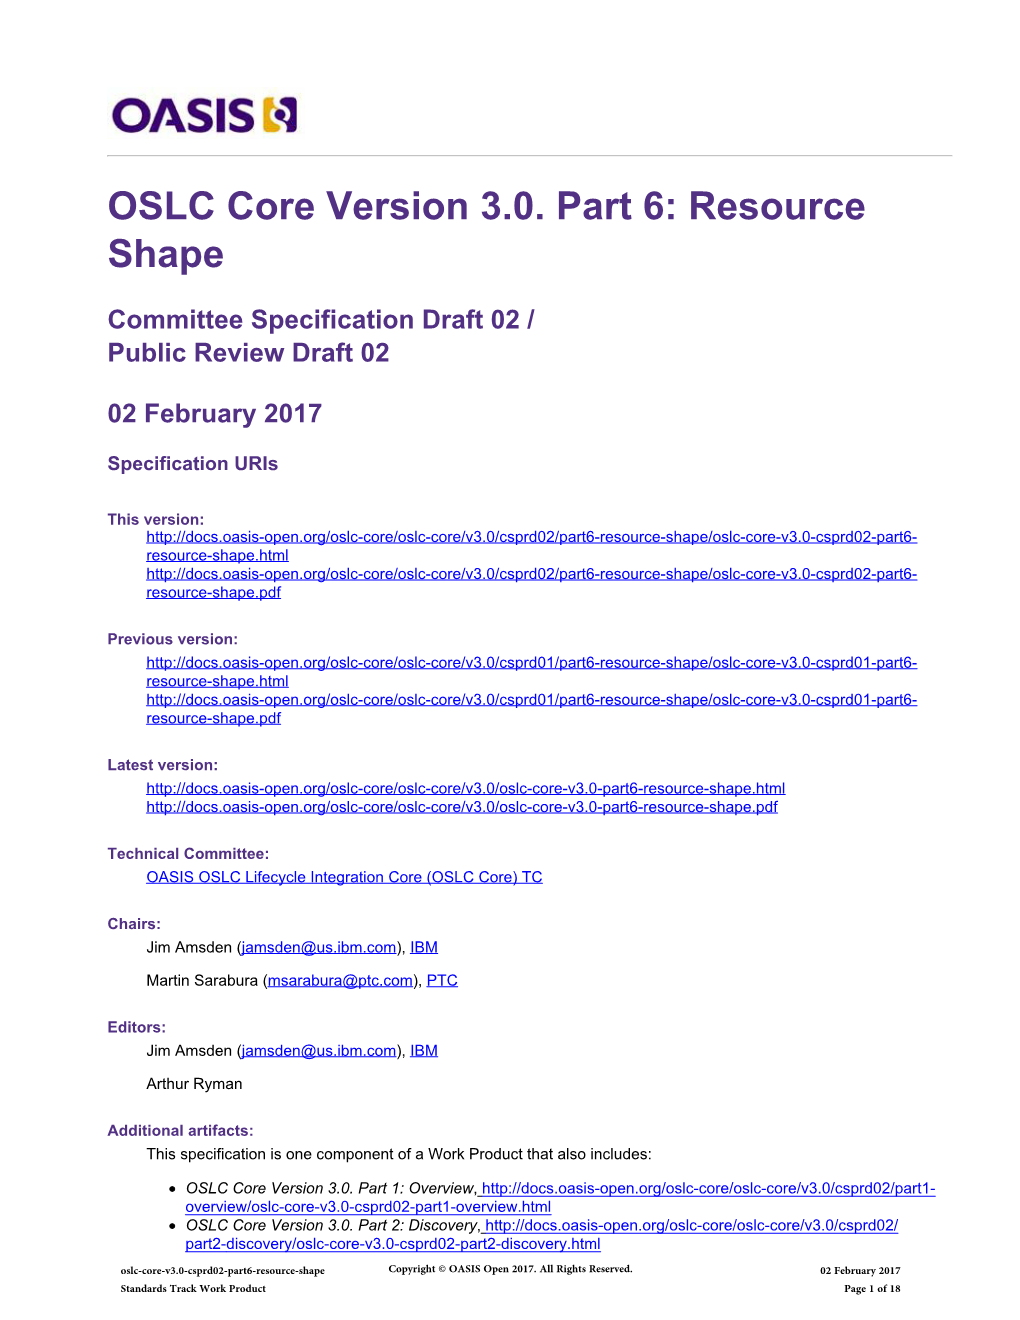 OSLC Core Version 3.0. Part 6: Resource Shape